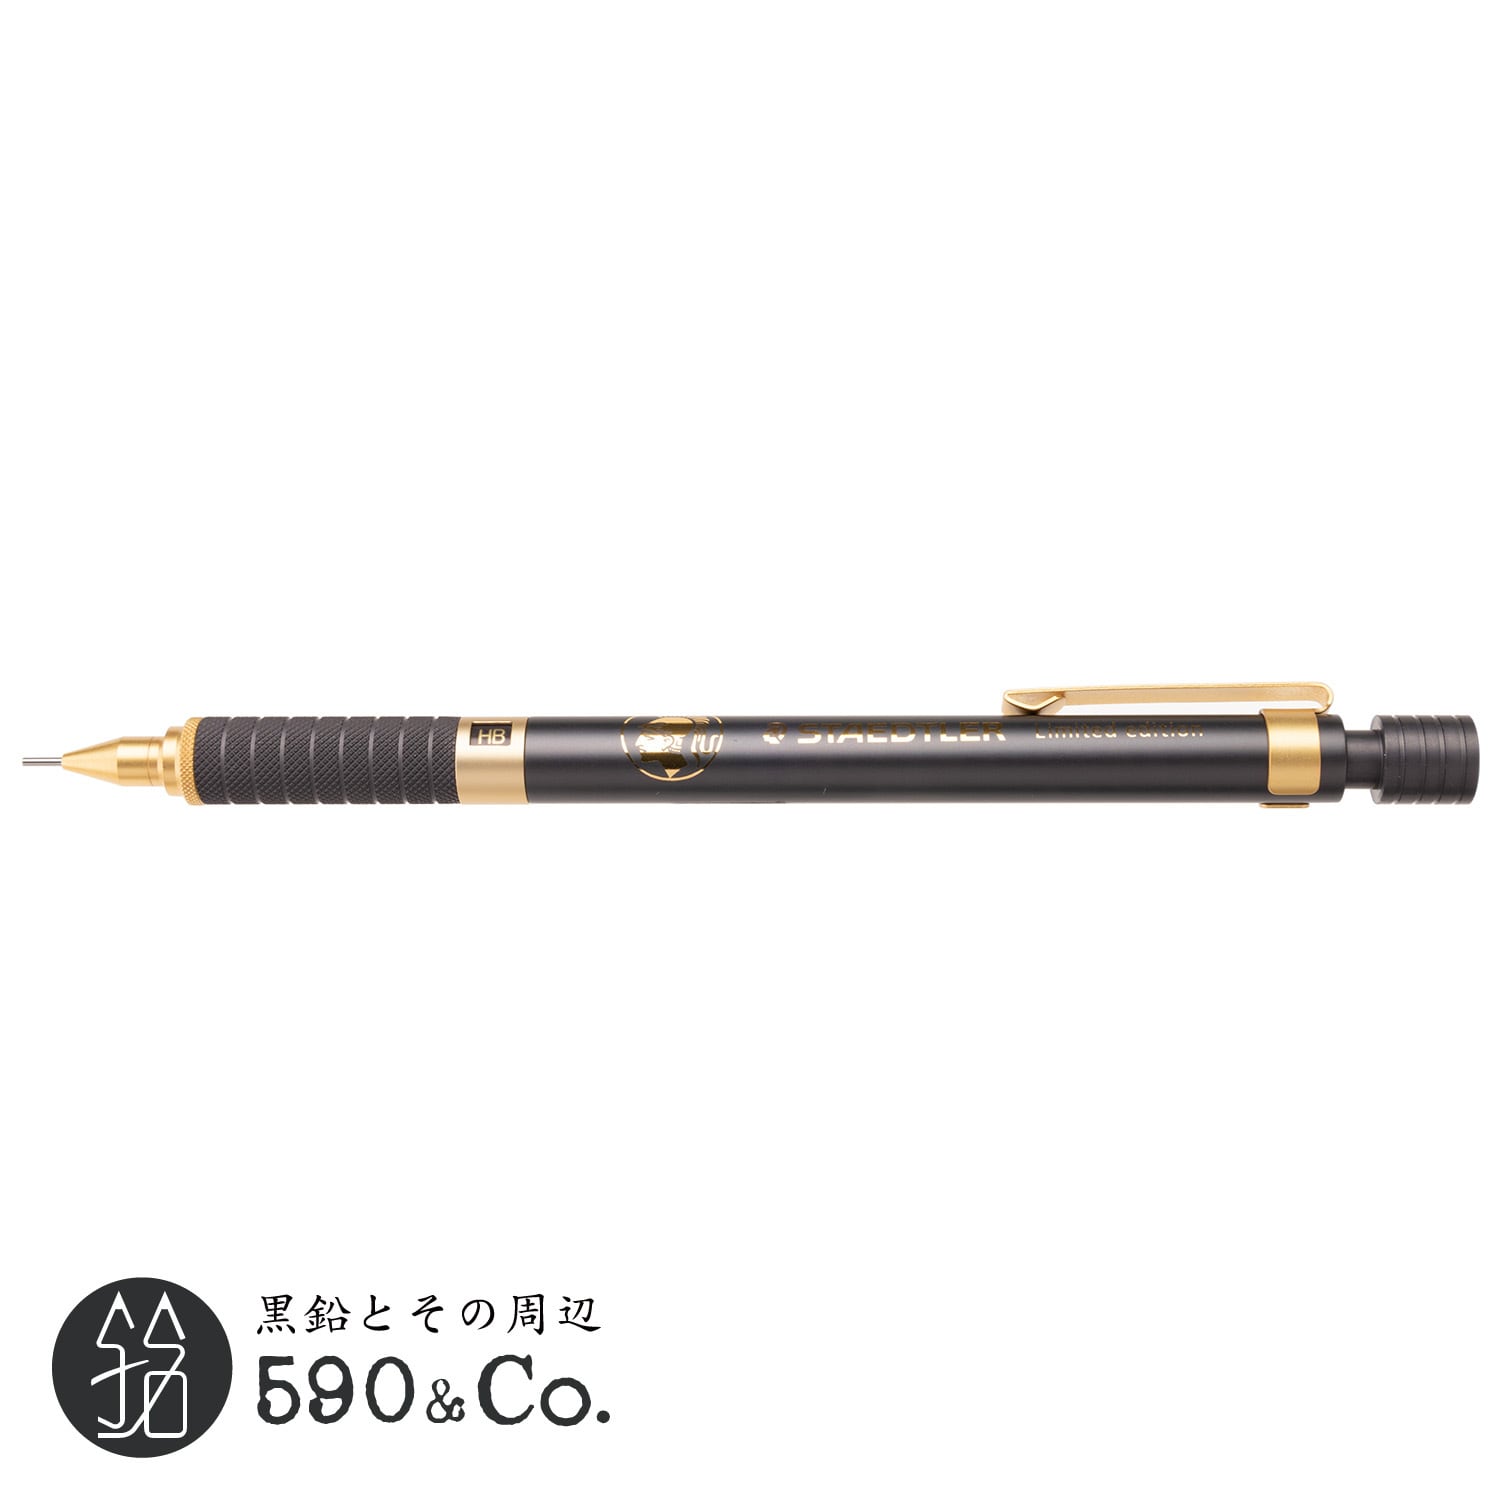 ステッドラー シャーペン 0.5mm 中国限定色 (黒×金) - 筆記具